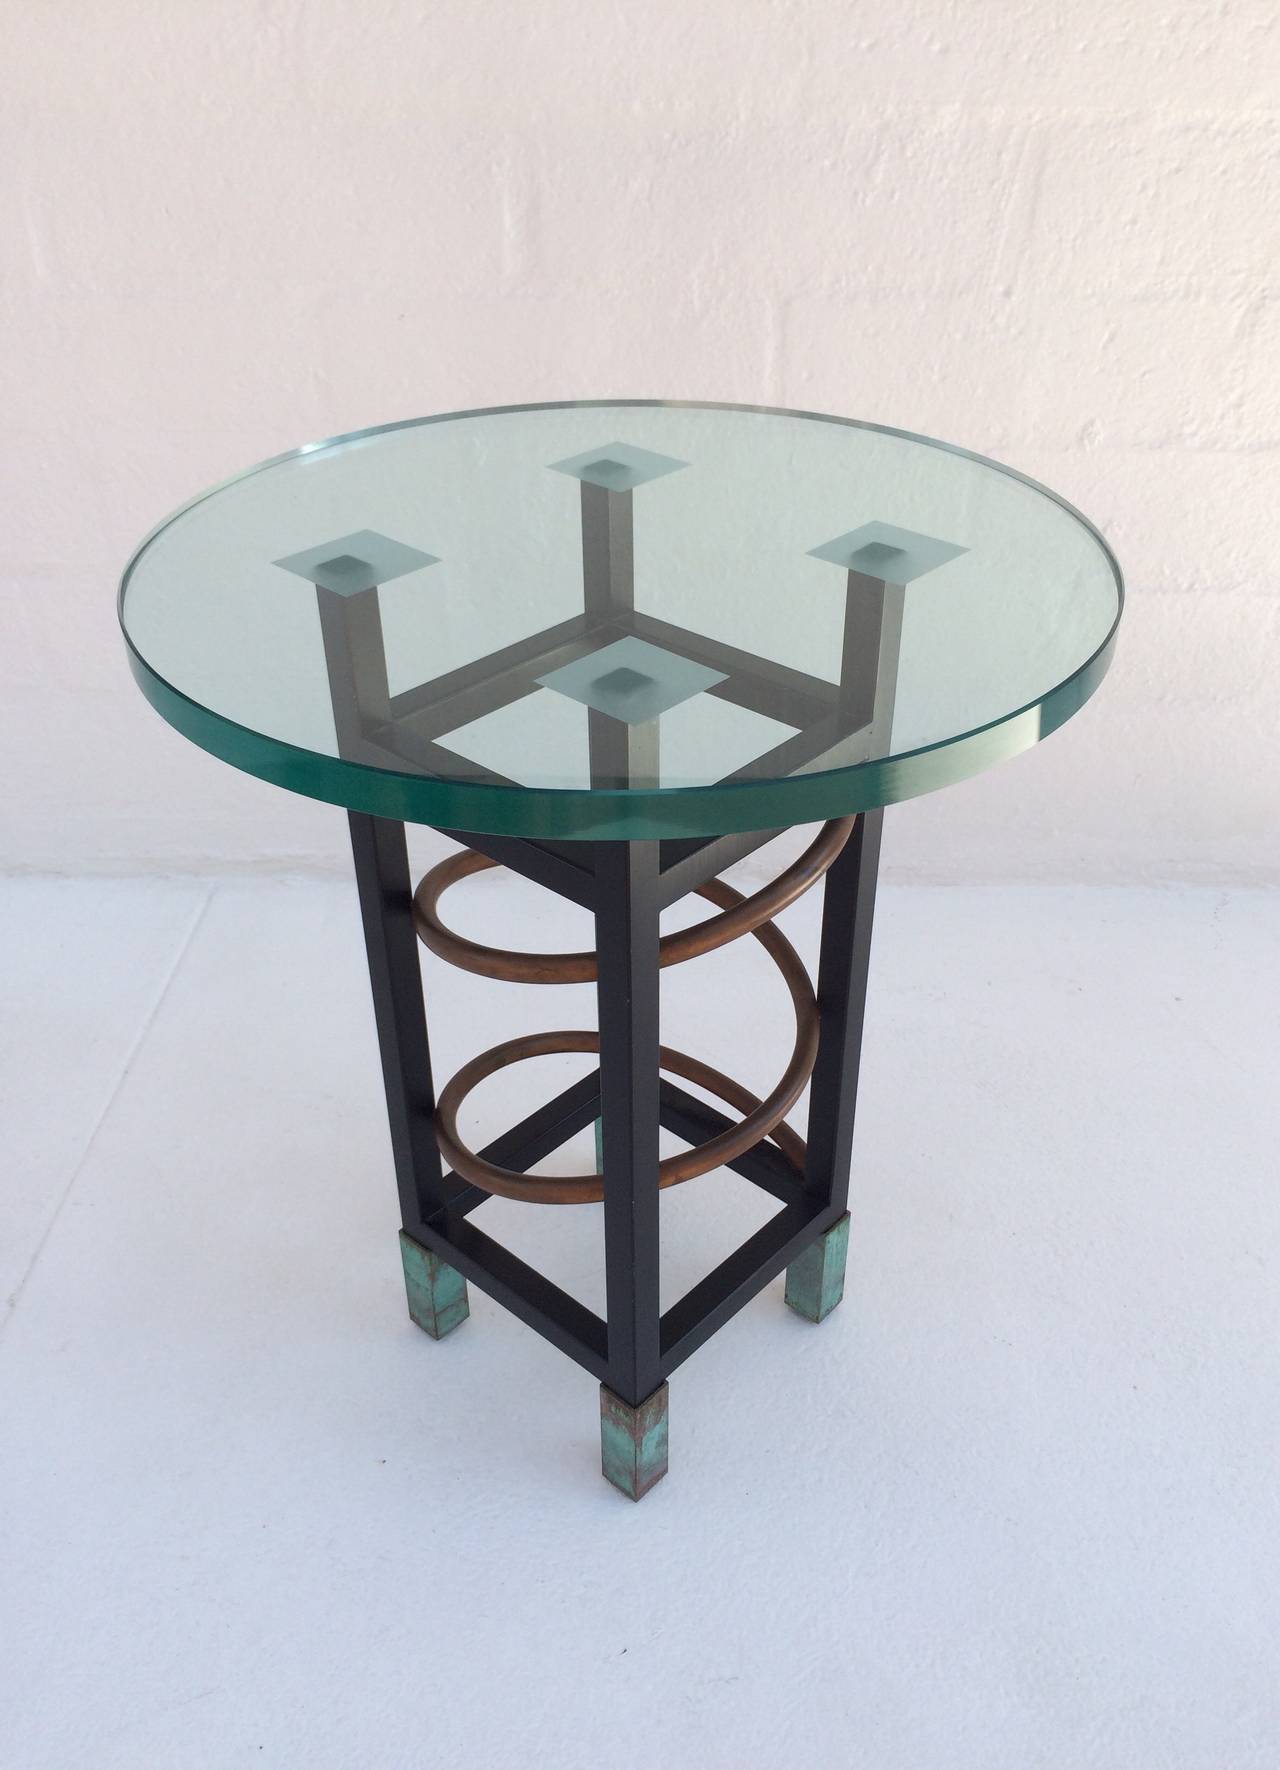 Cette table d'appoint de style Memphis des années 1980 est constituée d'acier peint avec des tubes en cuivre et des pieds en cuivre. 
Le plateau rond en verre a une épaisseur de 3/4 de pouce.